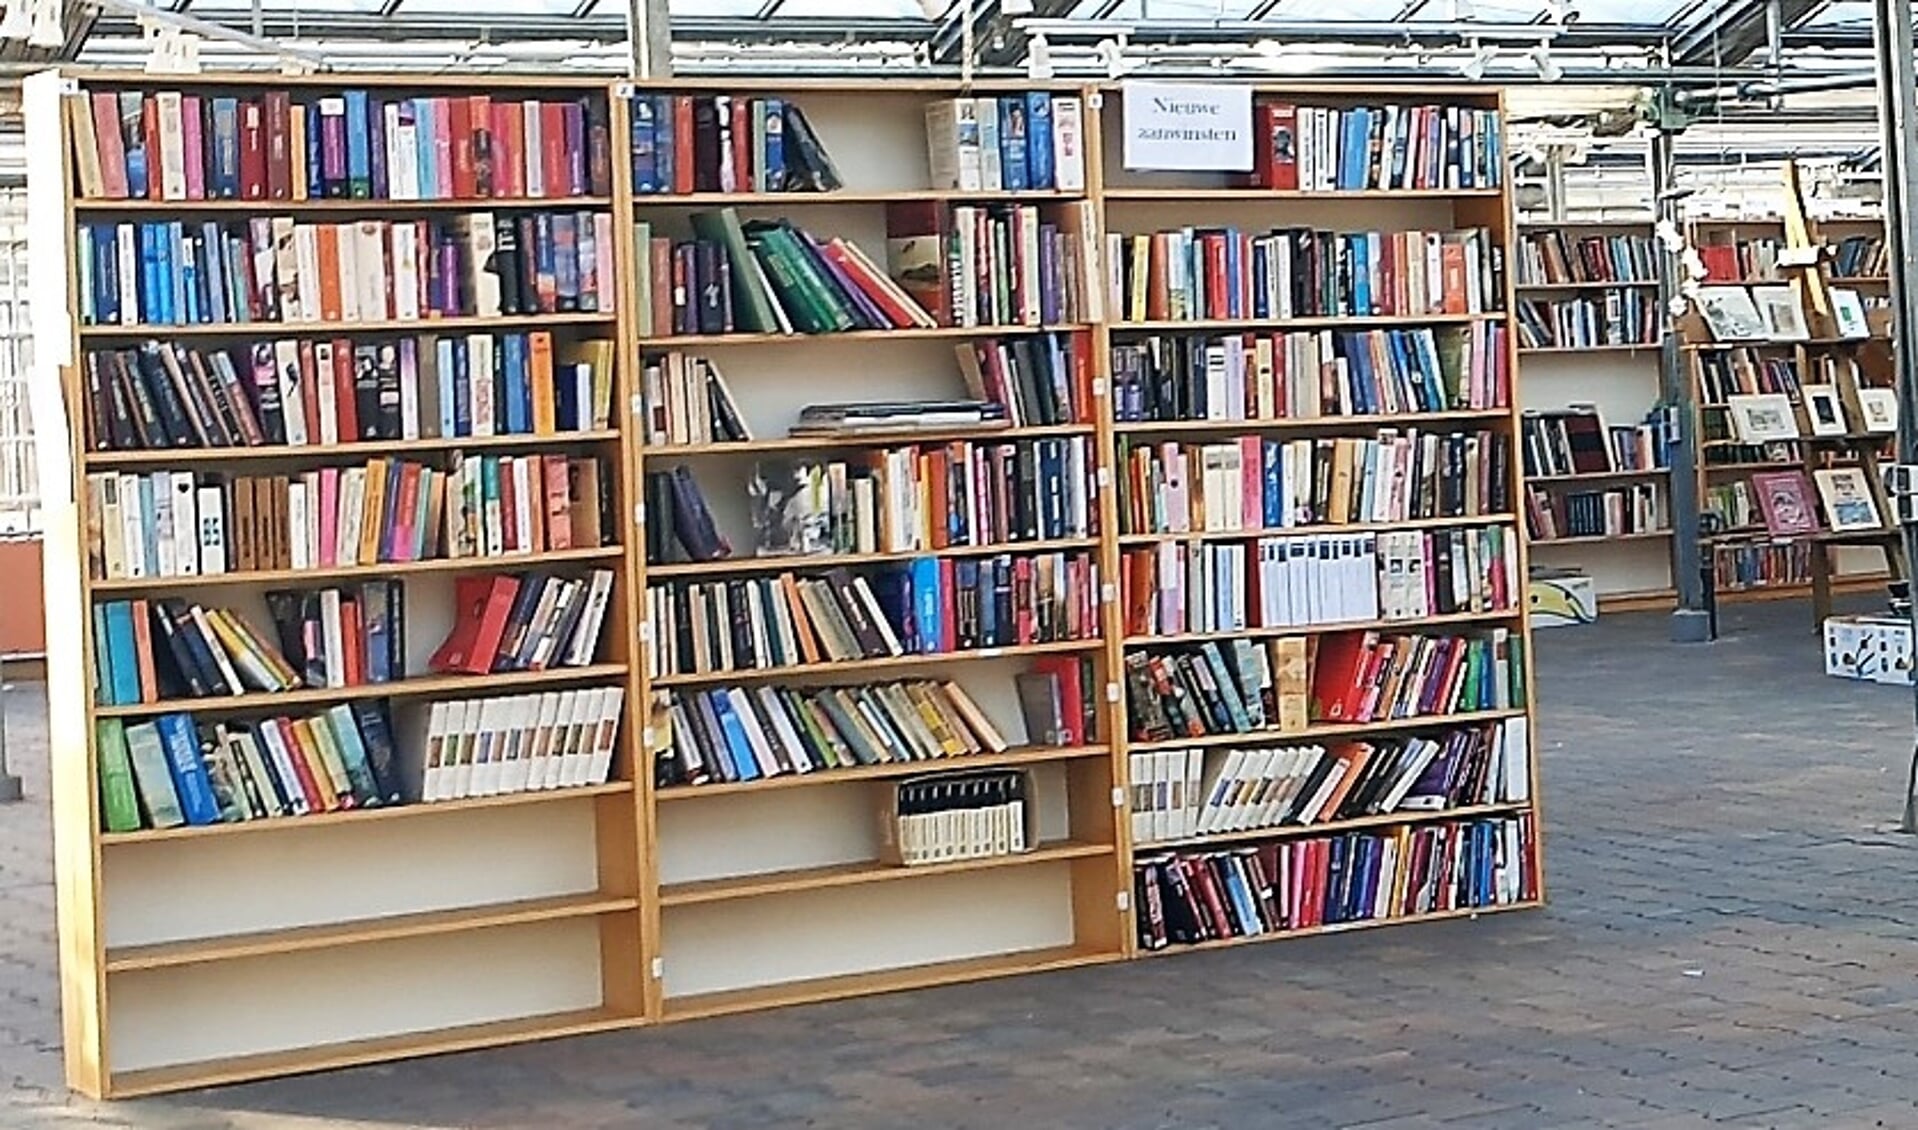 Al jaren is de Lionsboekenmarkt in Harderwijk een begrip. 